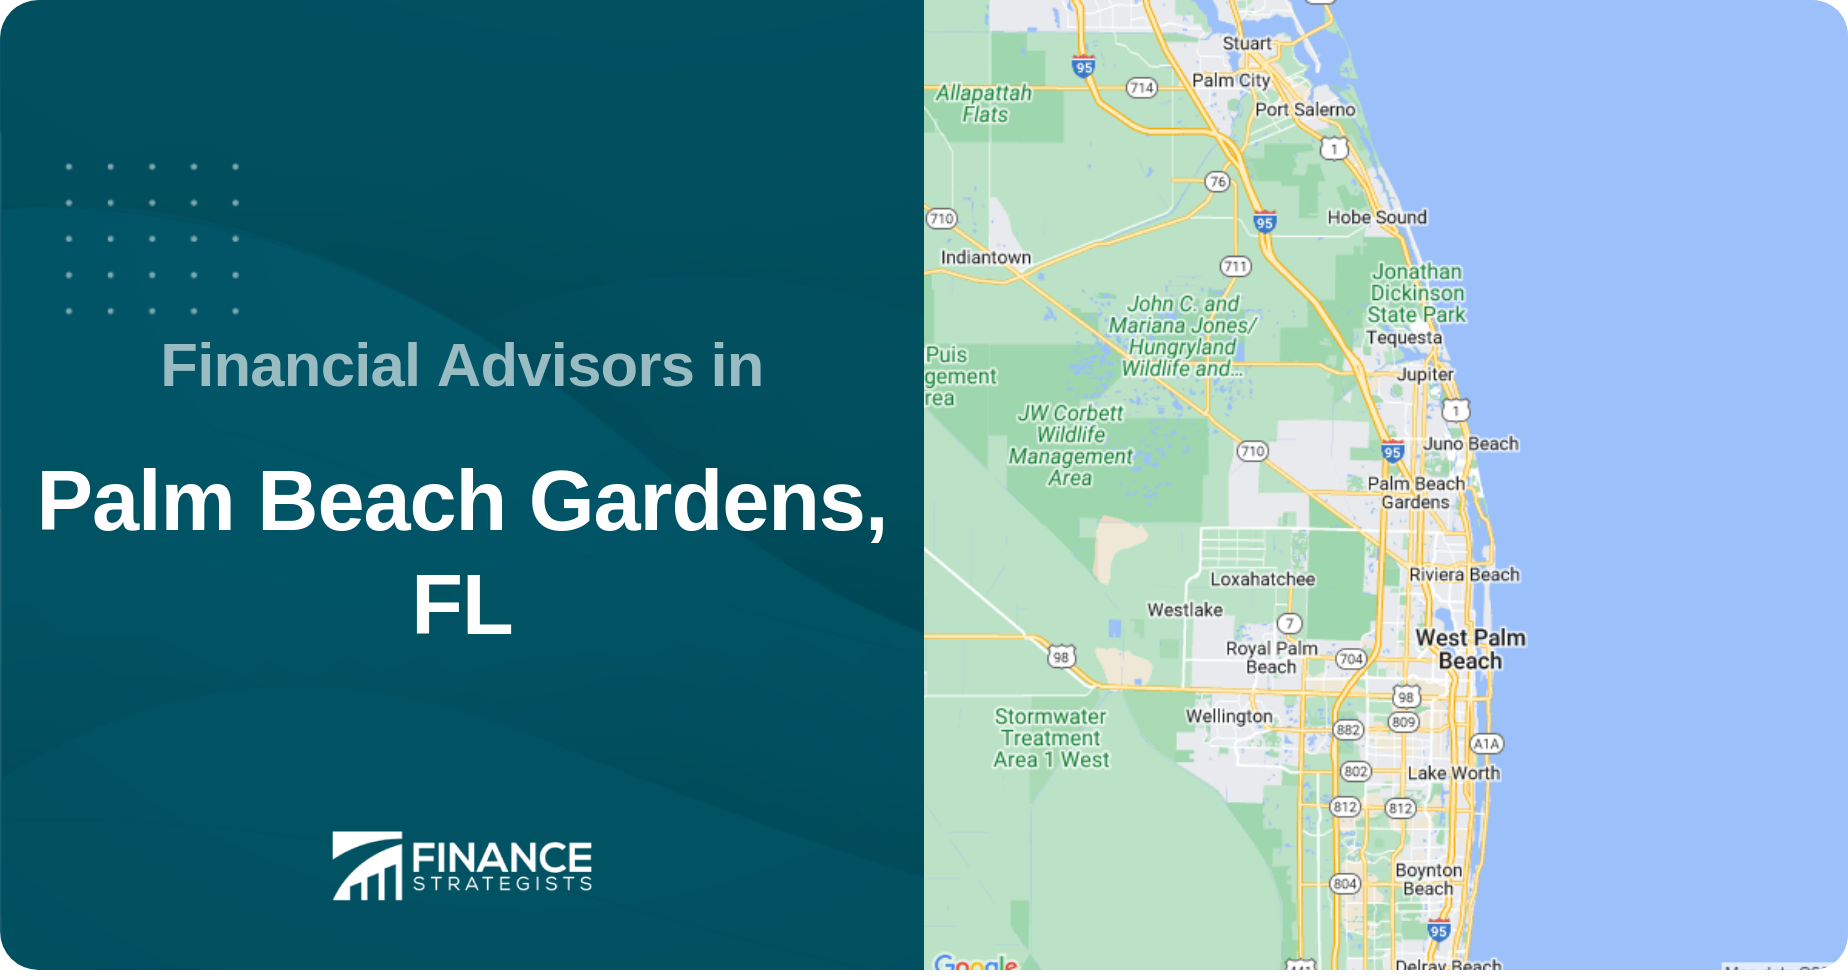 Financial Advisors in Palm Beach Gardens, FL